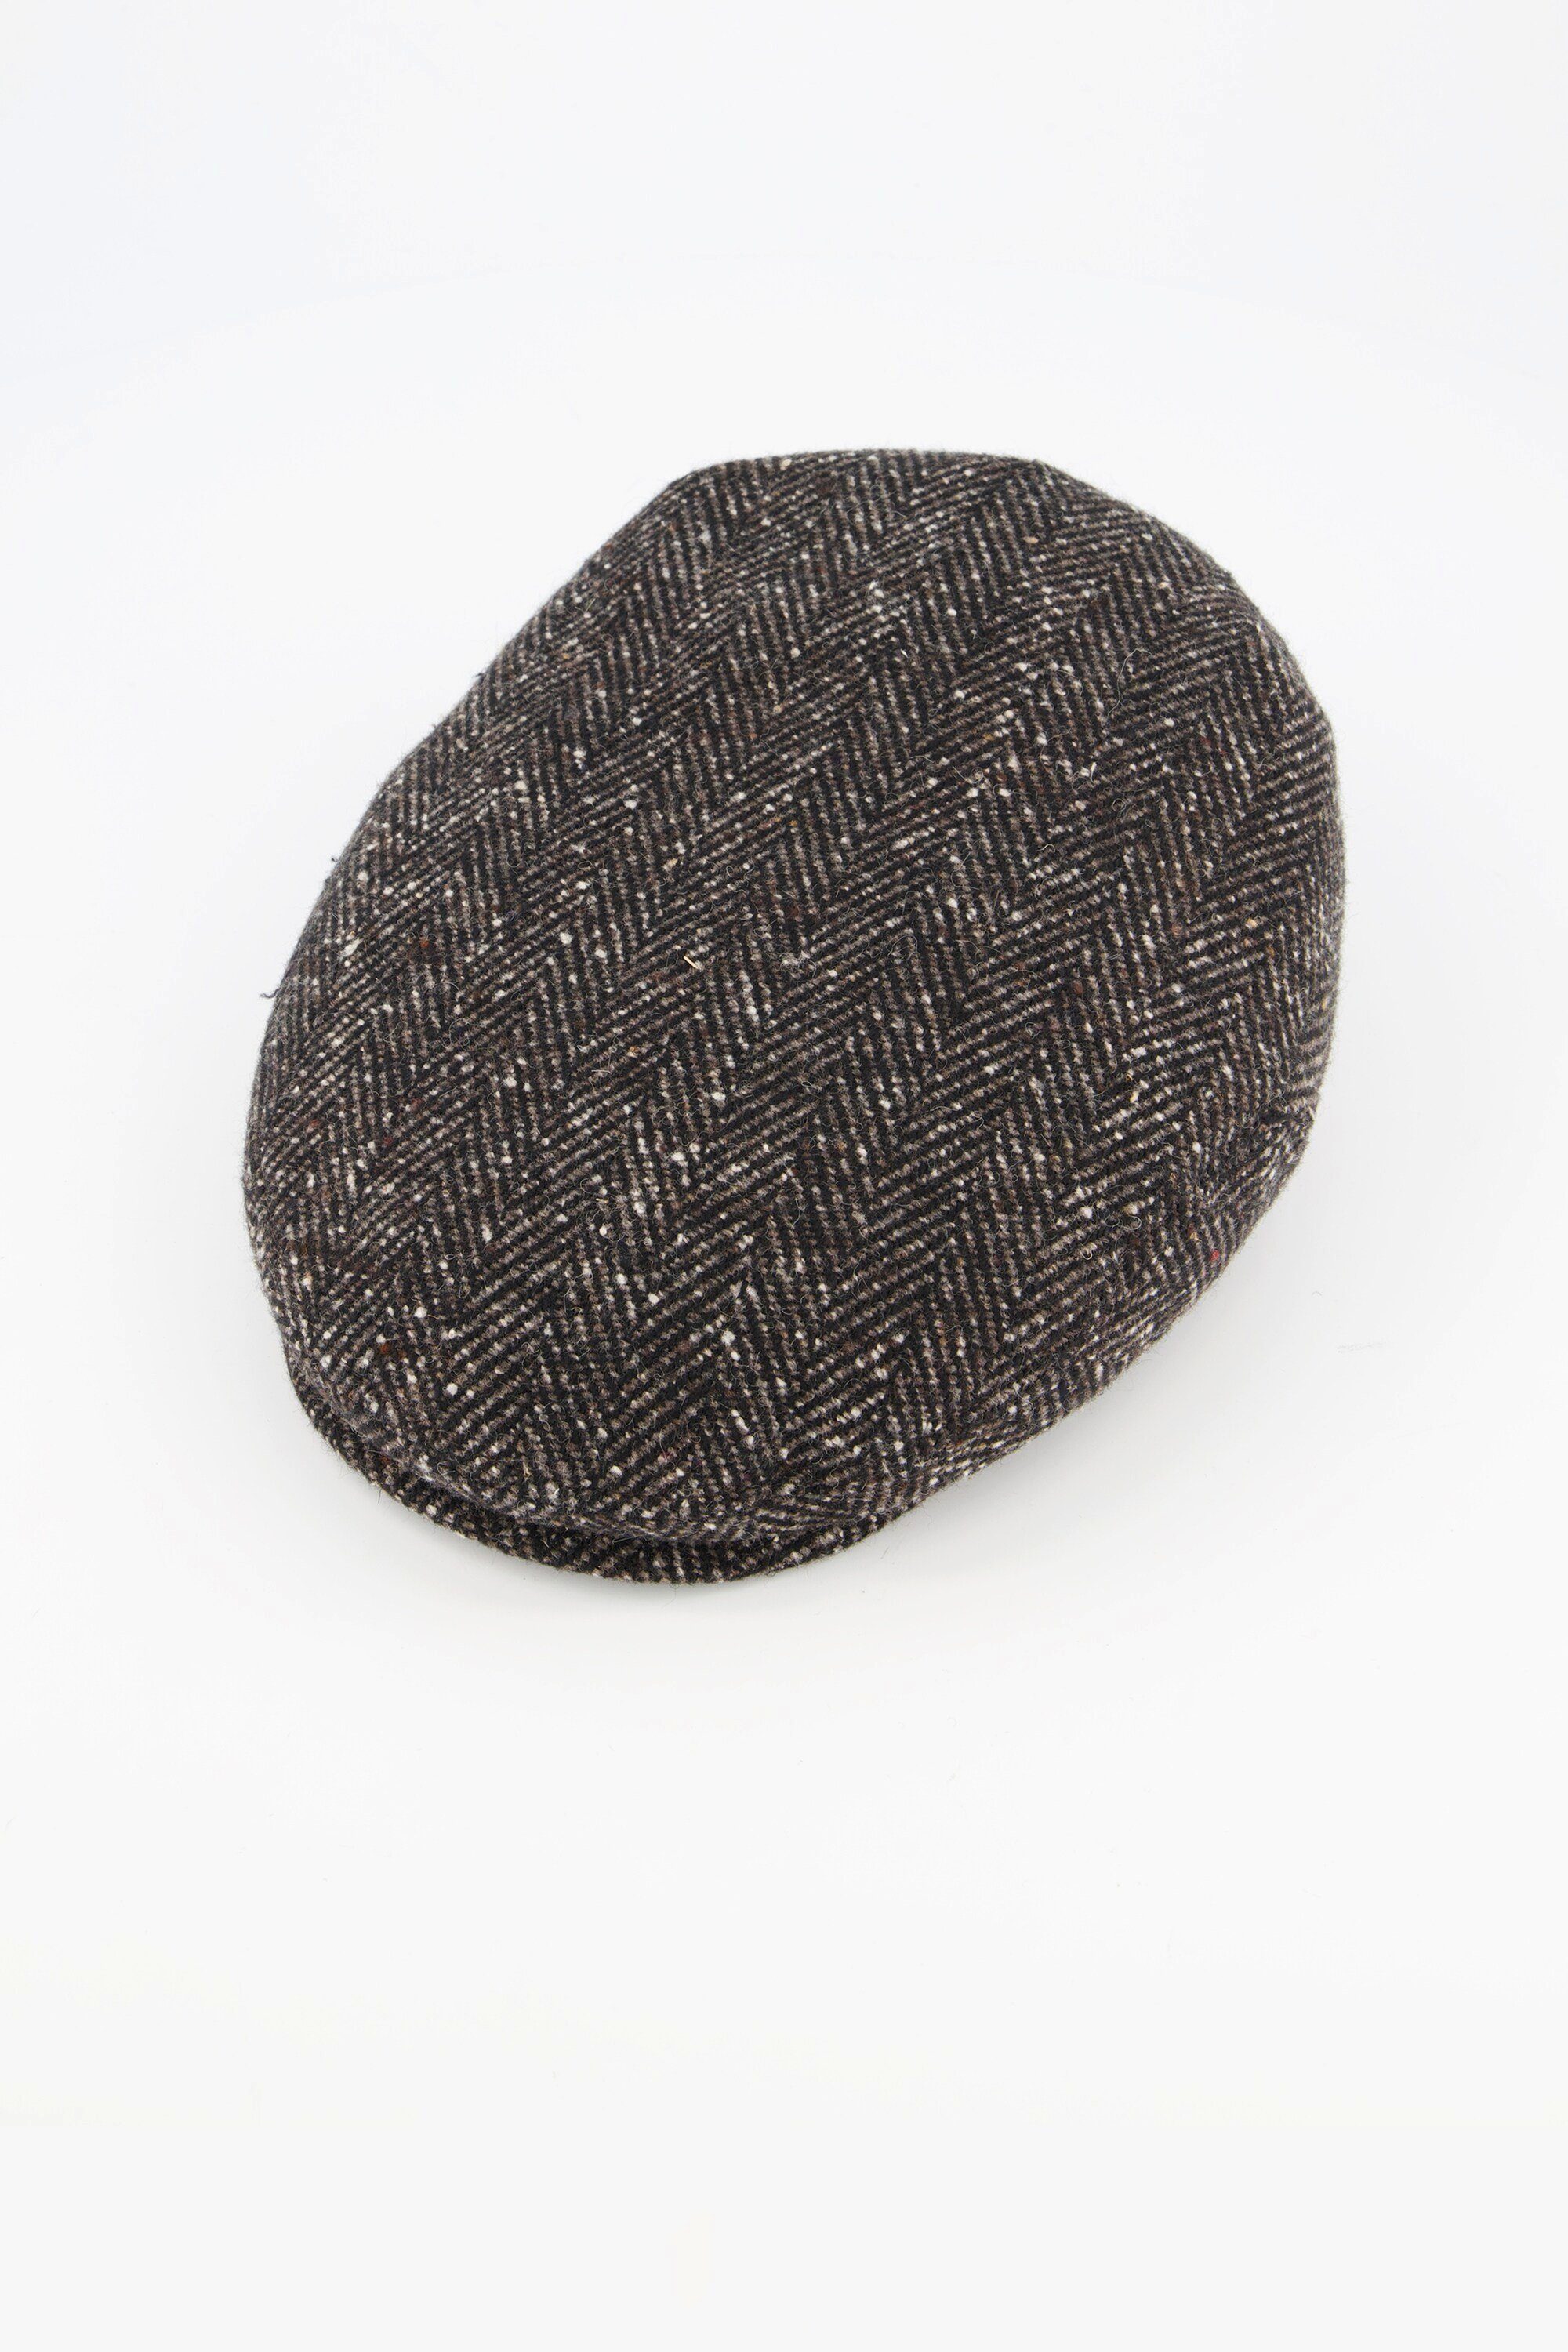 Strickhandschuhe braun Schirmmütze Woll-Qualität Fischgrat-Muster JP1880